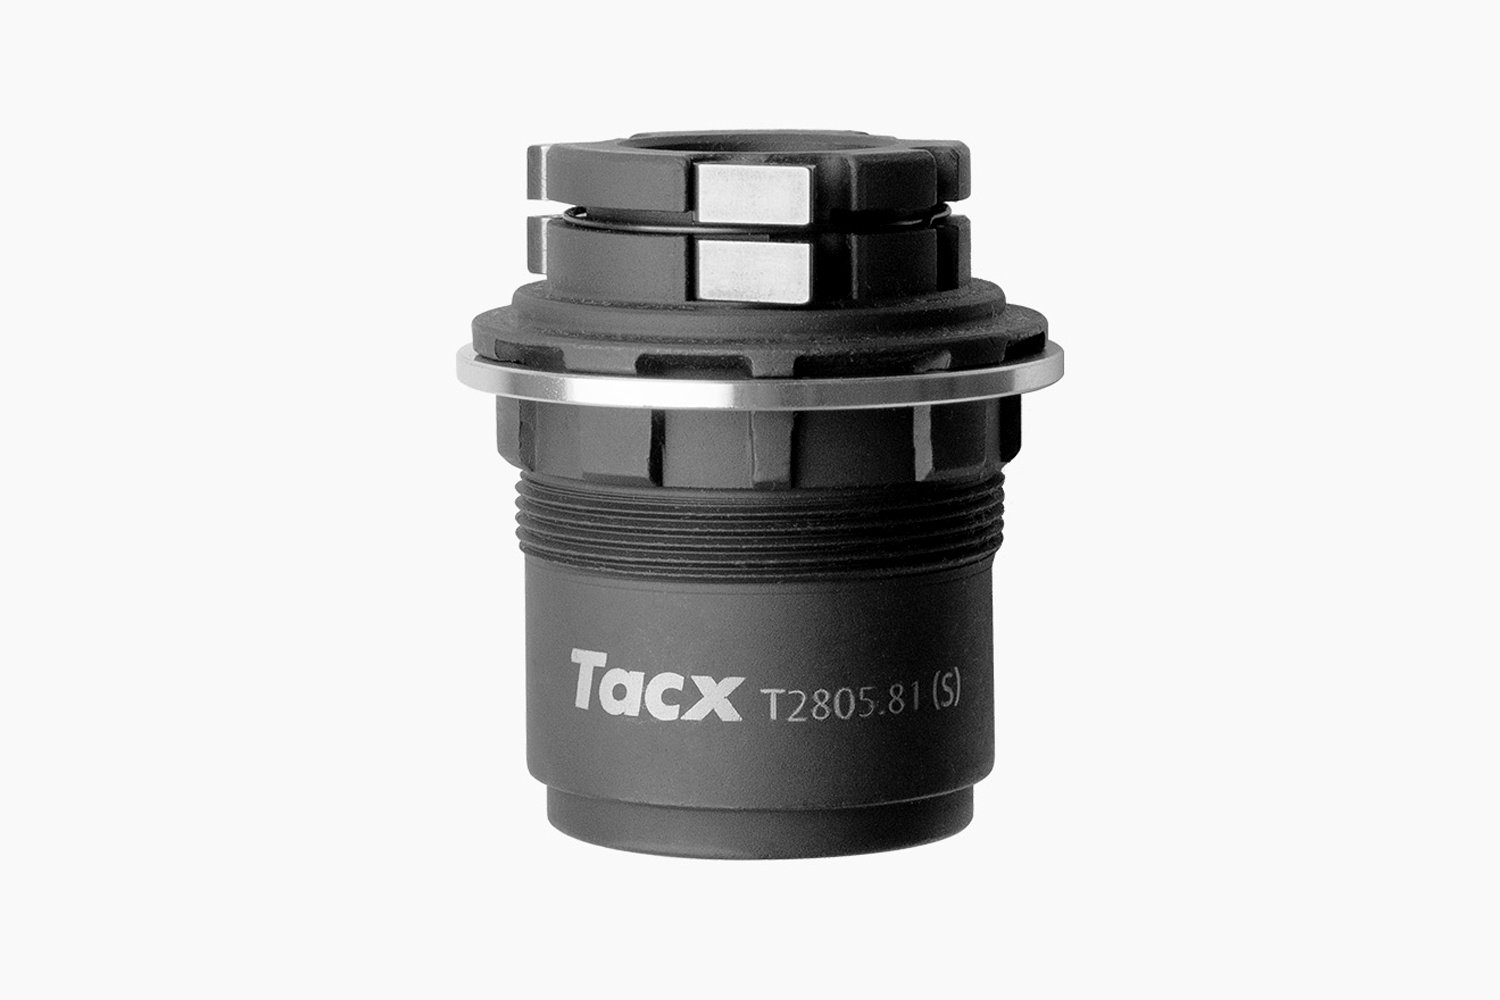 Барабан Tacx для кассеты SRAM XD-R, для Tacx, T2805.81 съемник велосипедной кассеты tacx c рычагом для campagnolo t4547